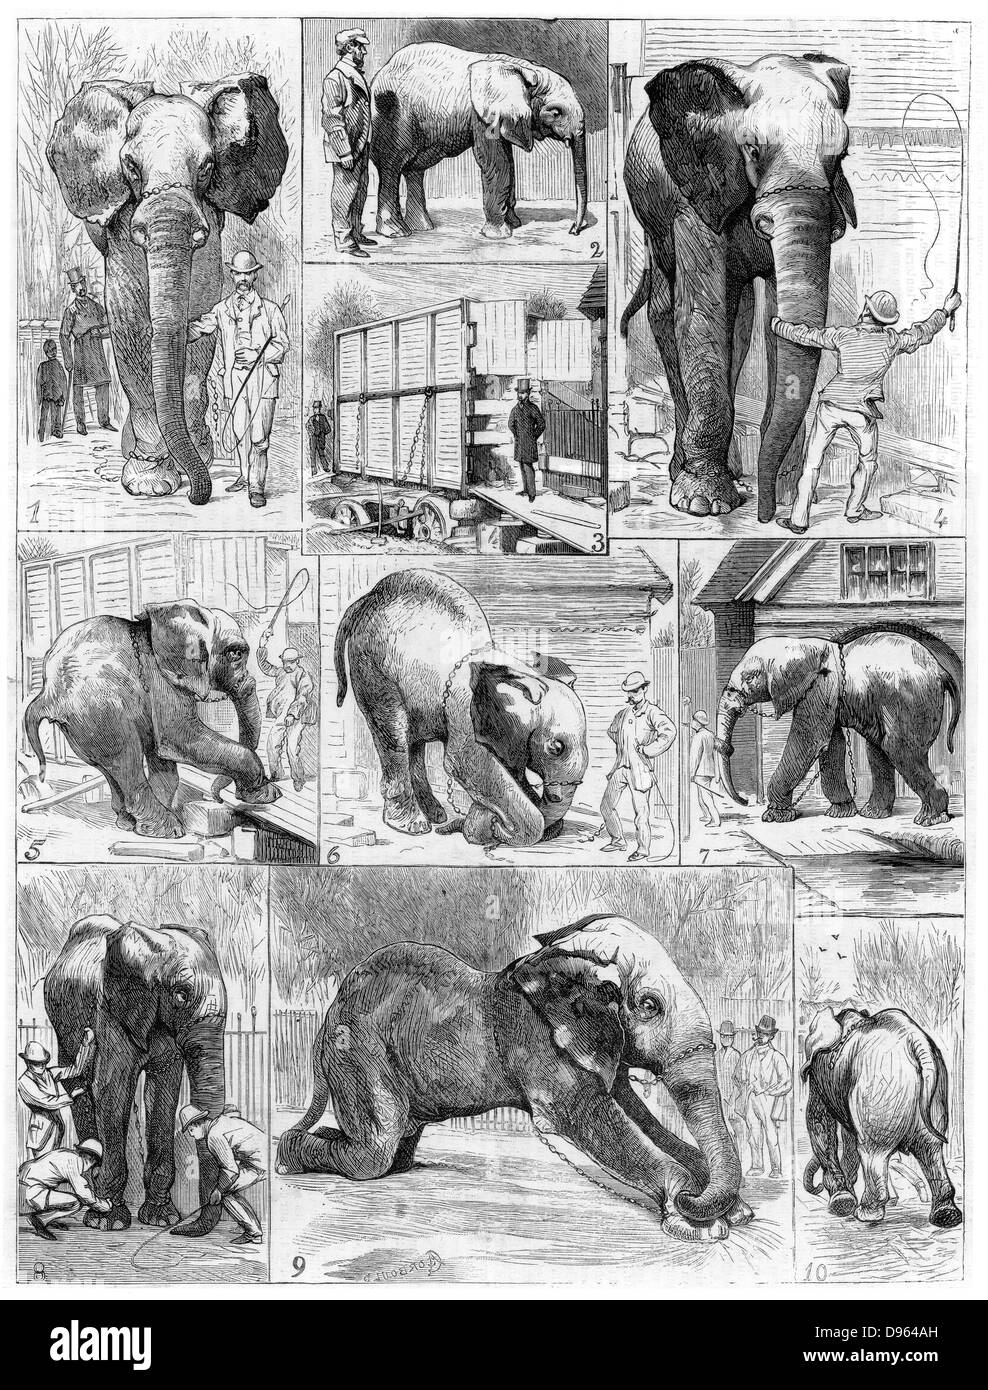 Jumbo der Großen Afrikanischen Elefanten von London Zoo im Jahr 1882 verkauft an die amerikanische Showman Phineas Taylor Barnum (1810-1891) für seinen Zirkus, die als die "größte Show der Welt" bekannt wurde. Schwierigkeiten bei der Jumbo erhalten sein Quartier zu verlassen. Von "Le Voleur" (Paris, 1882). Holzstich. Stockfoto